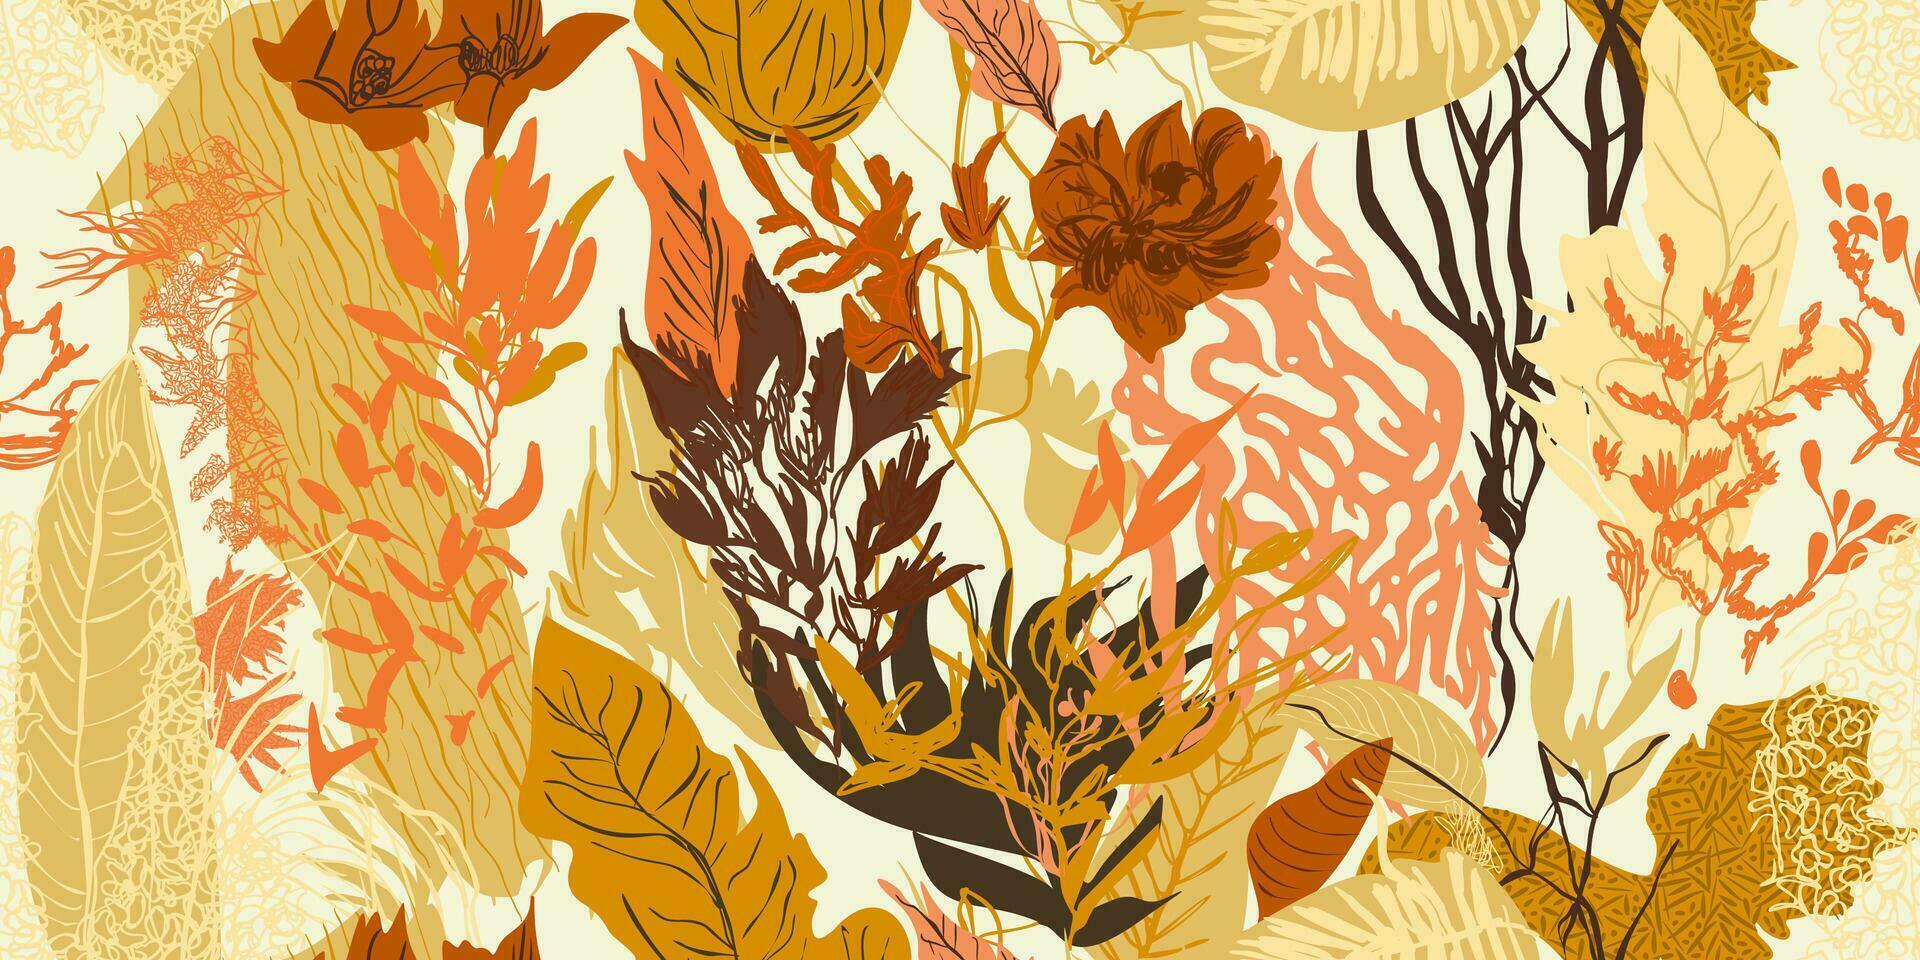 exotisch Urwald Pflanzen nahtlos Muster Drucke, abstrakt Blumen, Vektor Grafik. perfekt zum Mode, Textilien, und künstlerisch Projekte Sammlung von modern kreativ Abbildungen Entwürfe.